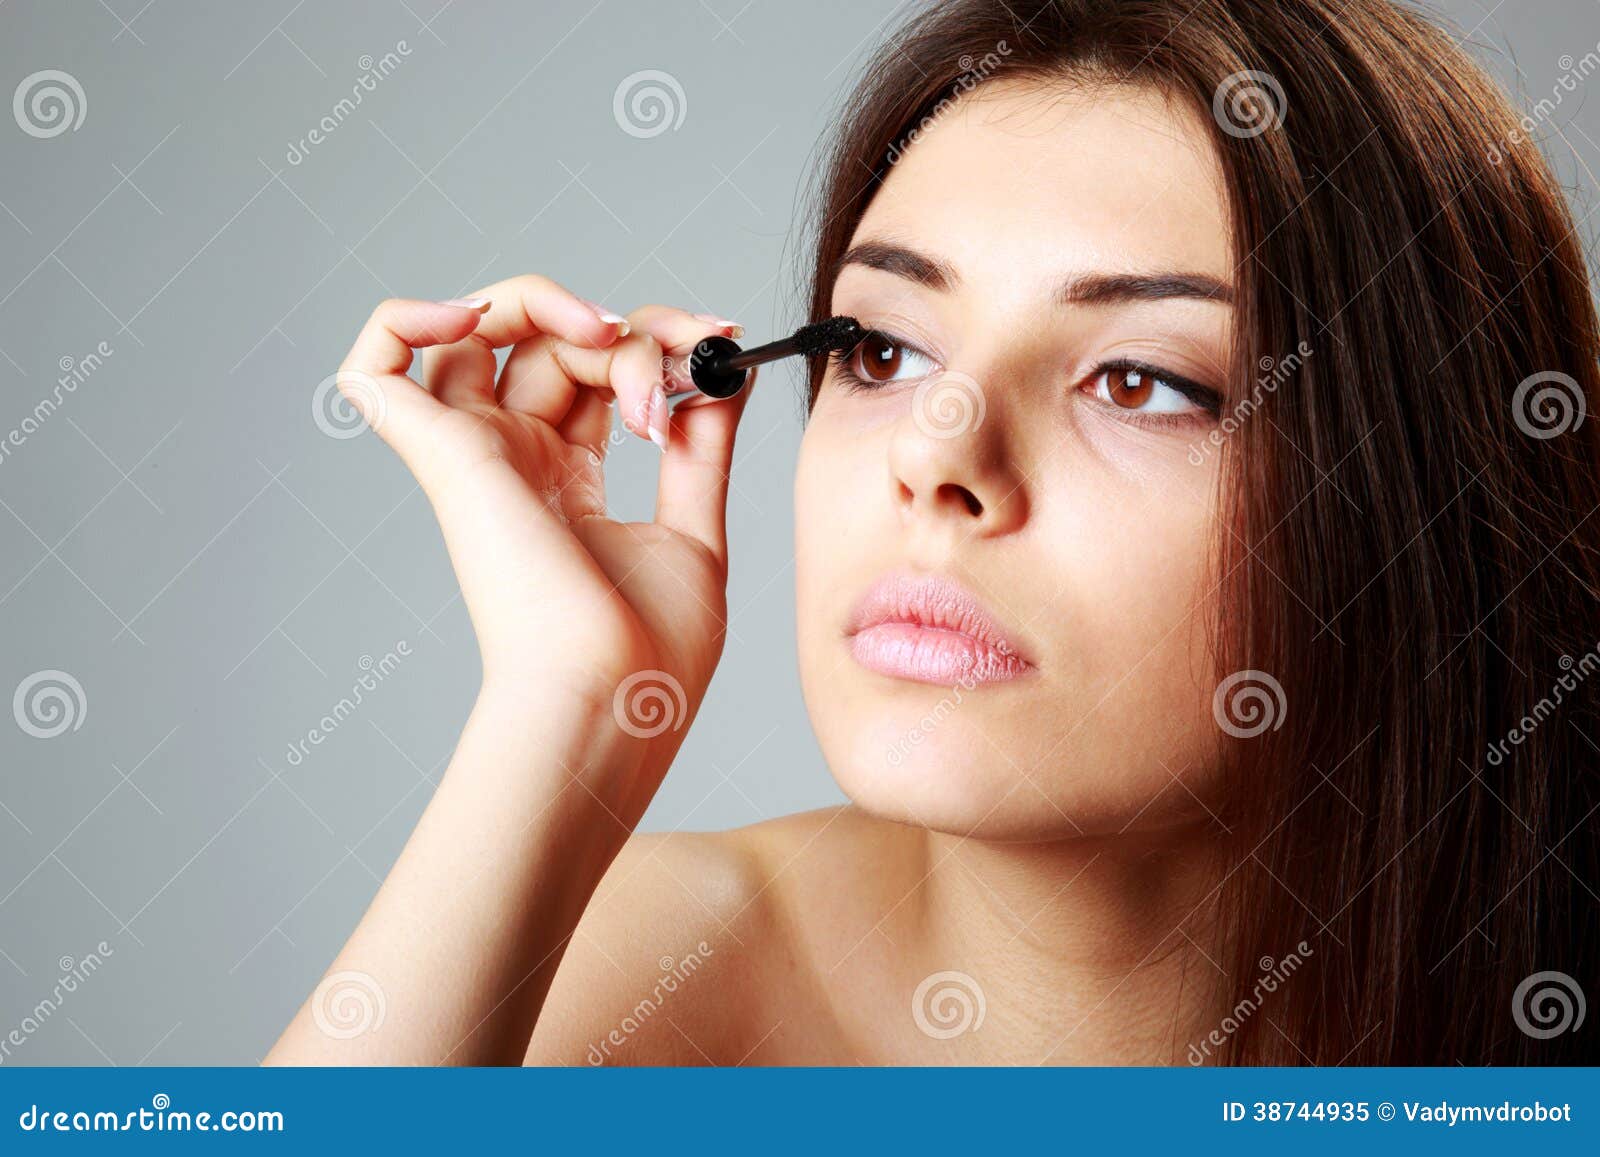 woman doing makeup